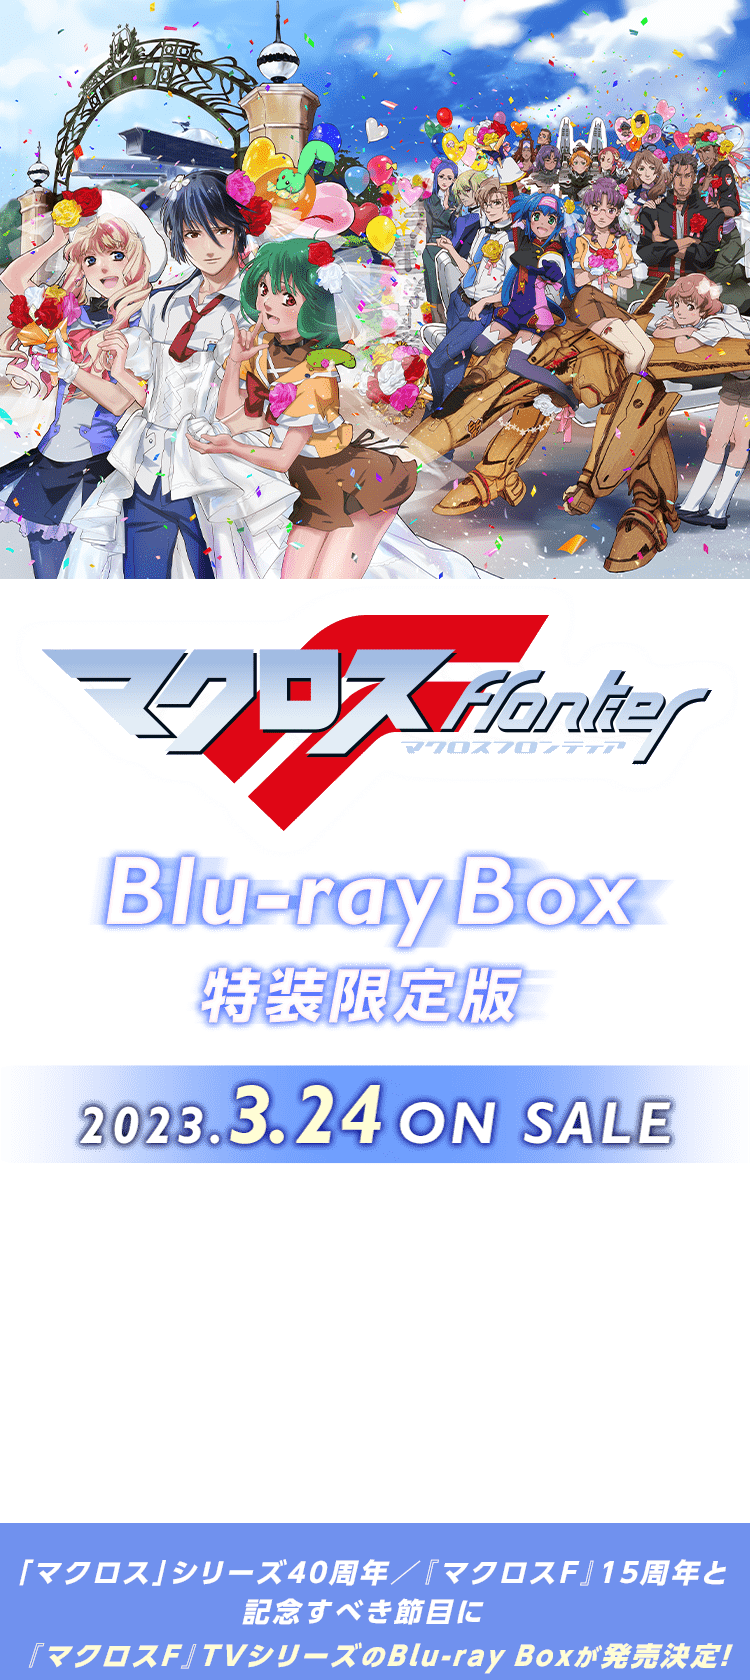 マクロスＦ』Blu-ray Box 特装限定版 2023.3.24 ON SALE